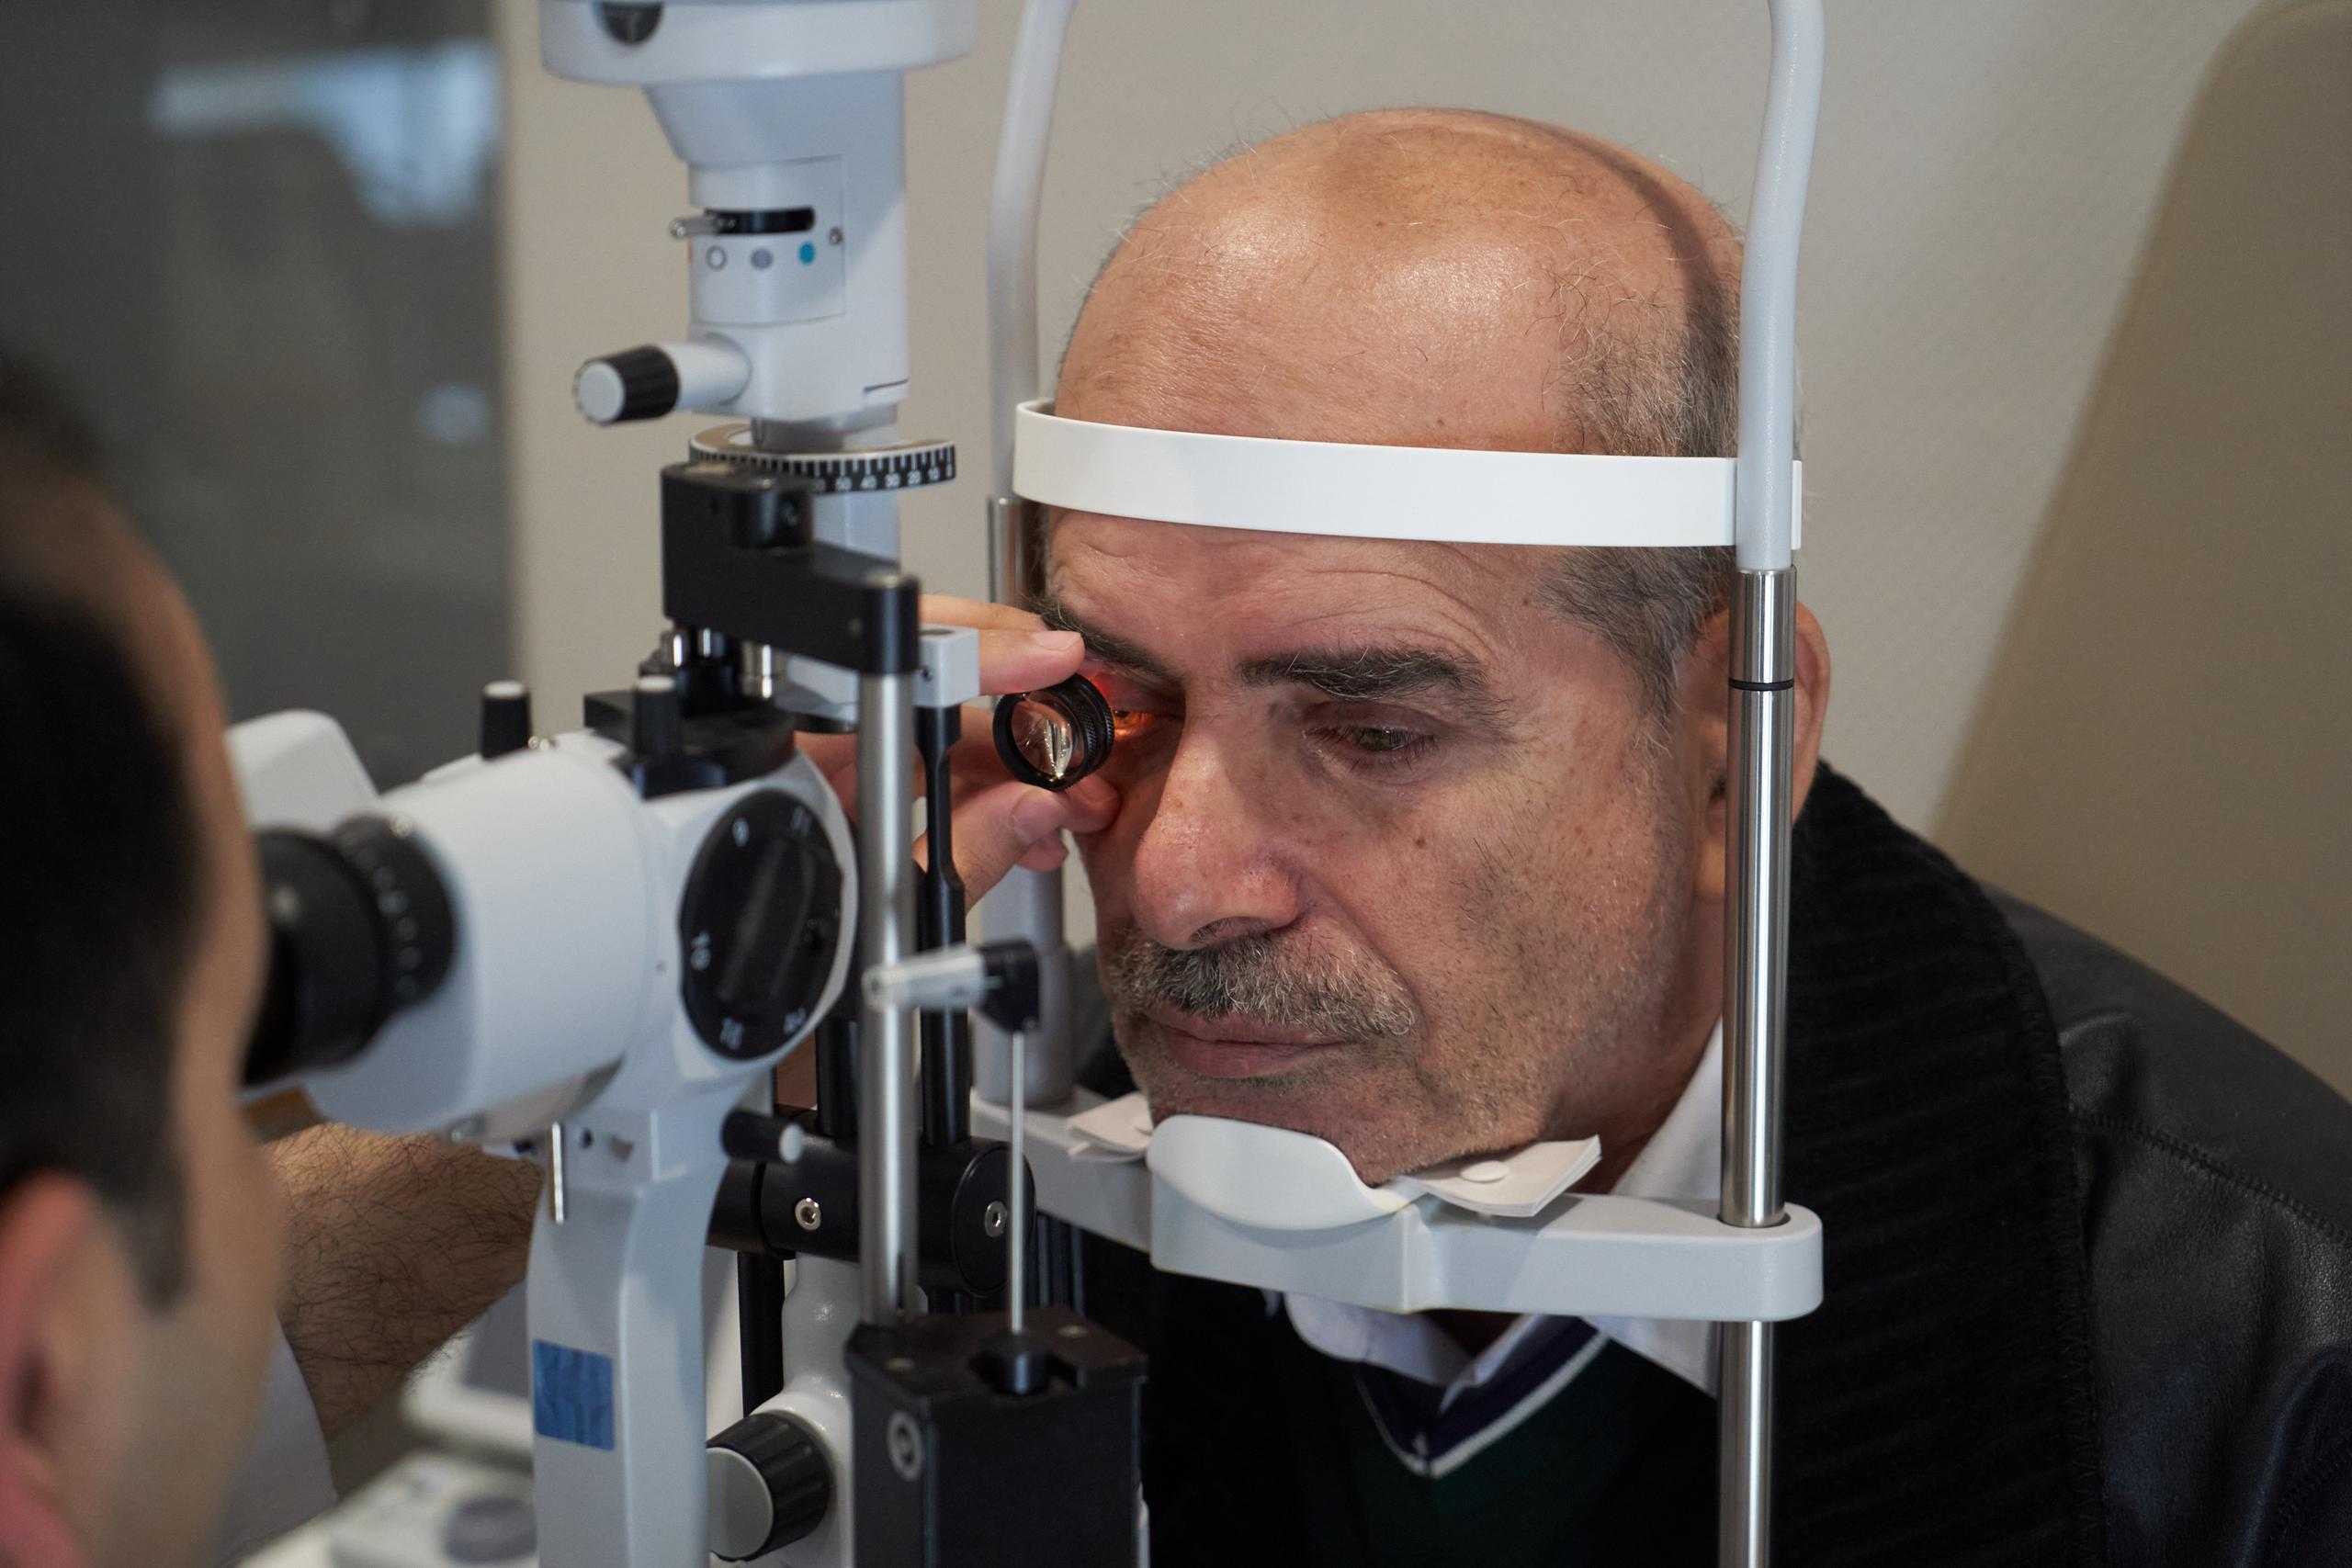 Según el Instituto Nacional de Ojos los síntomas de la retinopatía diabética son visión borrosa, visión con manchas flotantes y ceguera.